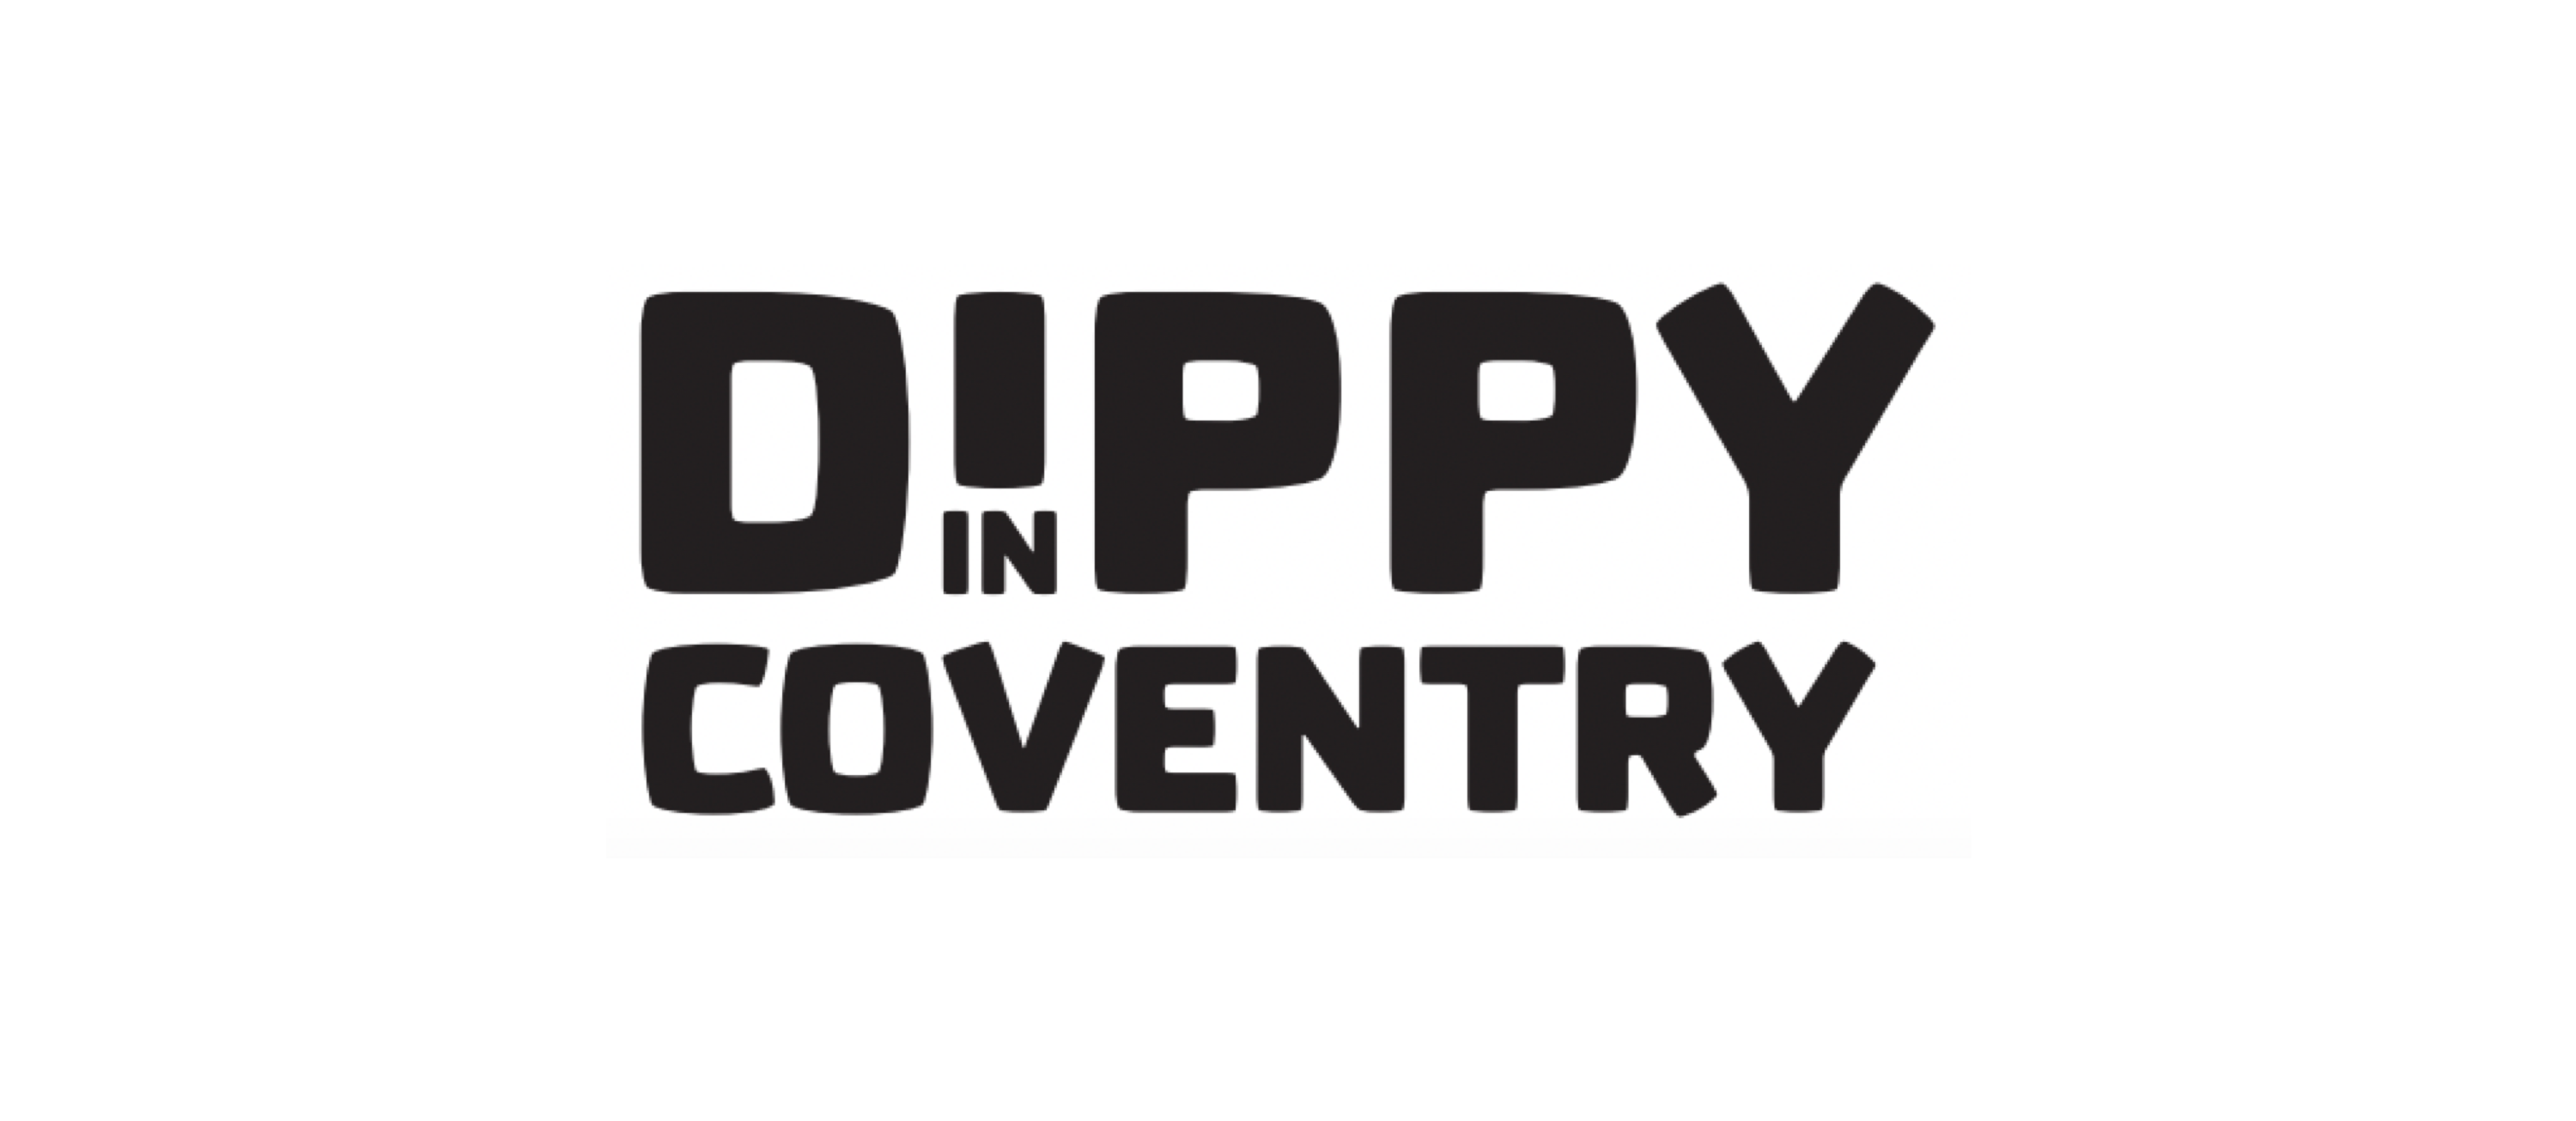 Dippy In Coventry logo